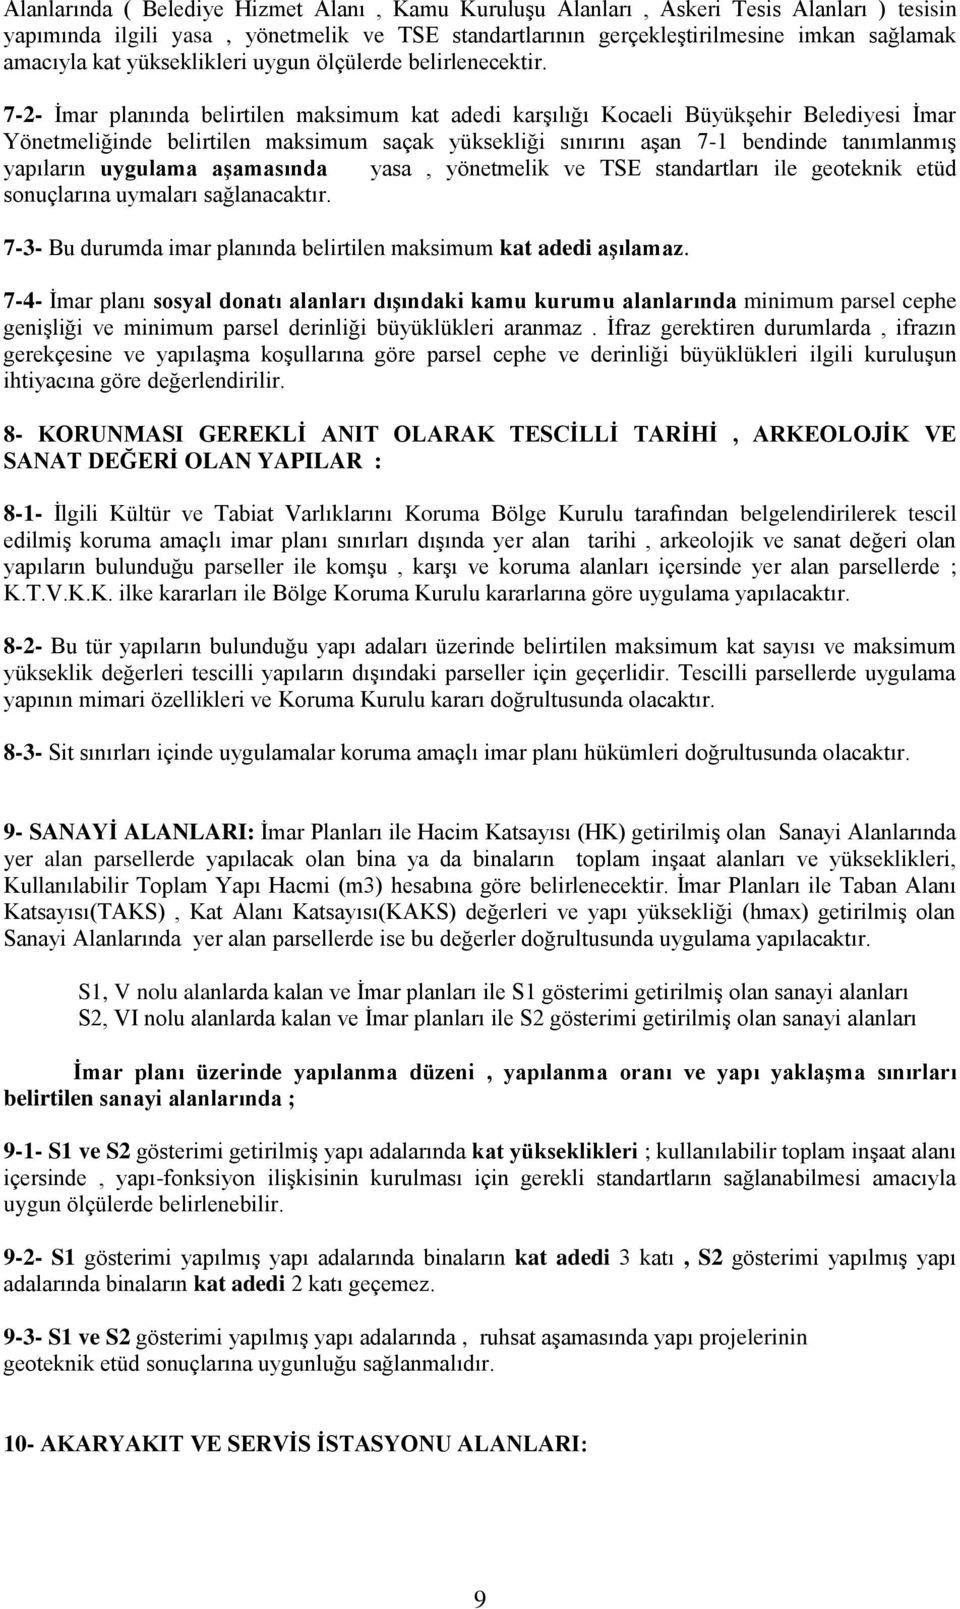 7-2- İmar planında belirtilen maksimum kat adedi karşılığı Kocaeli Büyükşehir Belediyesi İmar Yönetmeliğinde belirtilen maksimum saçak yüksekliği sınırını aşan 7-1 bendinde tanımlanmış yapıların